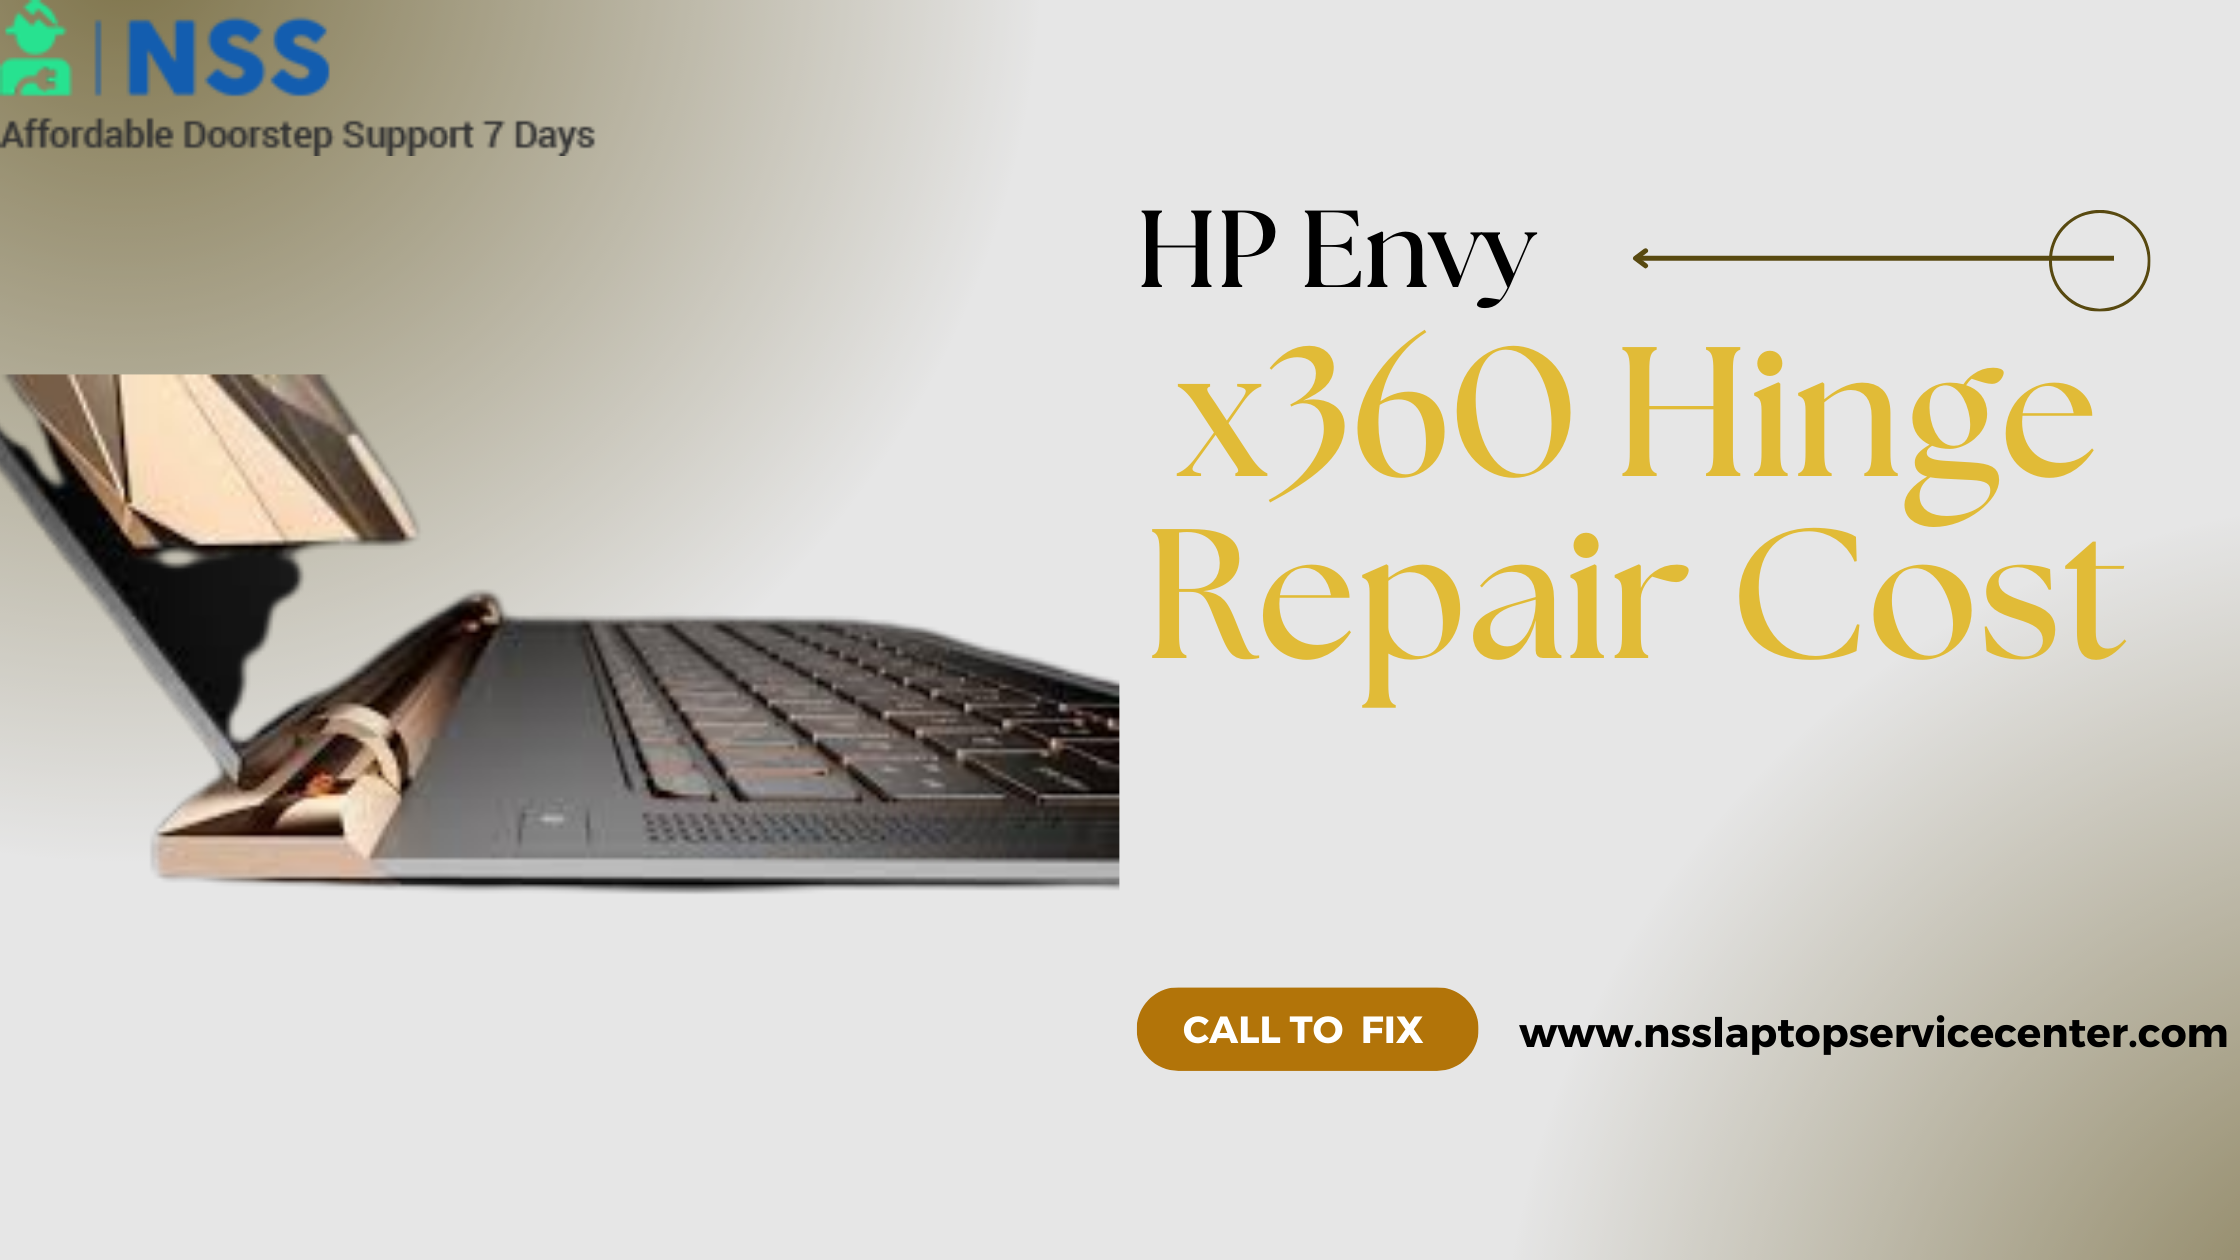 HP Envy x360 Hinge Repair Cost